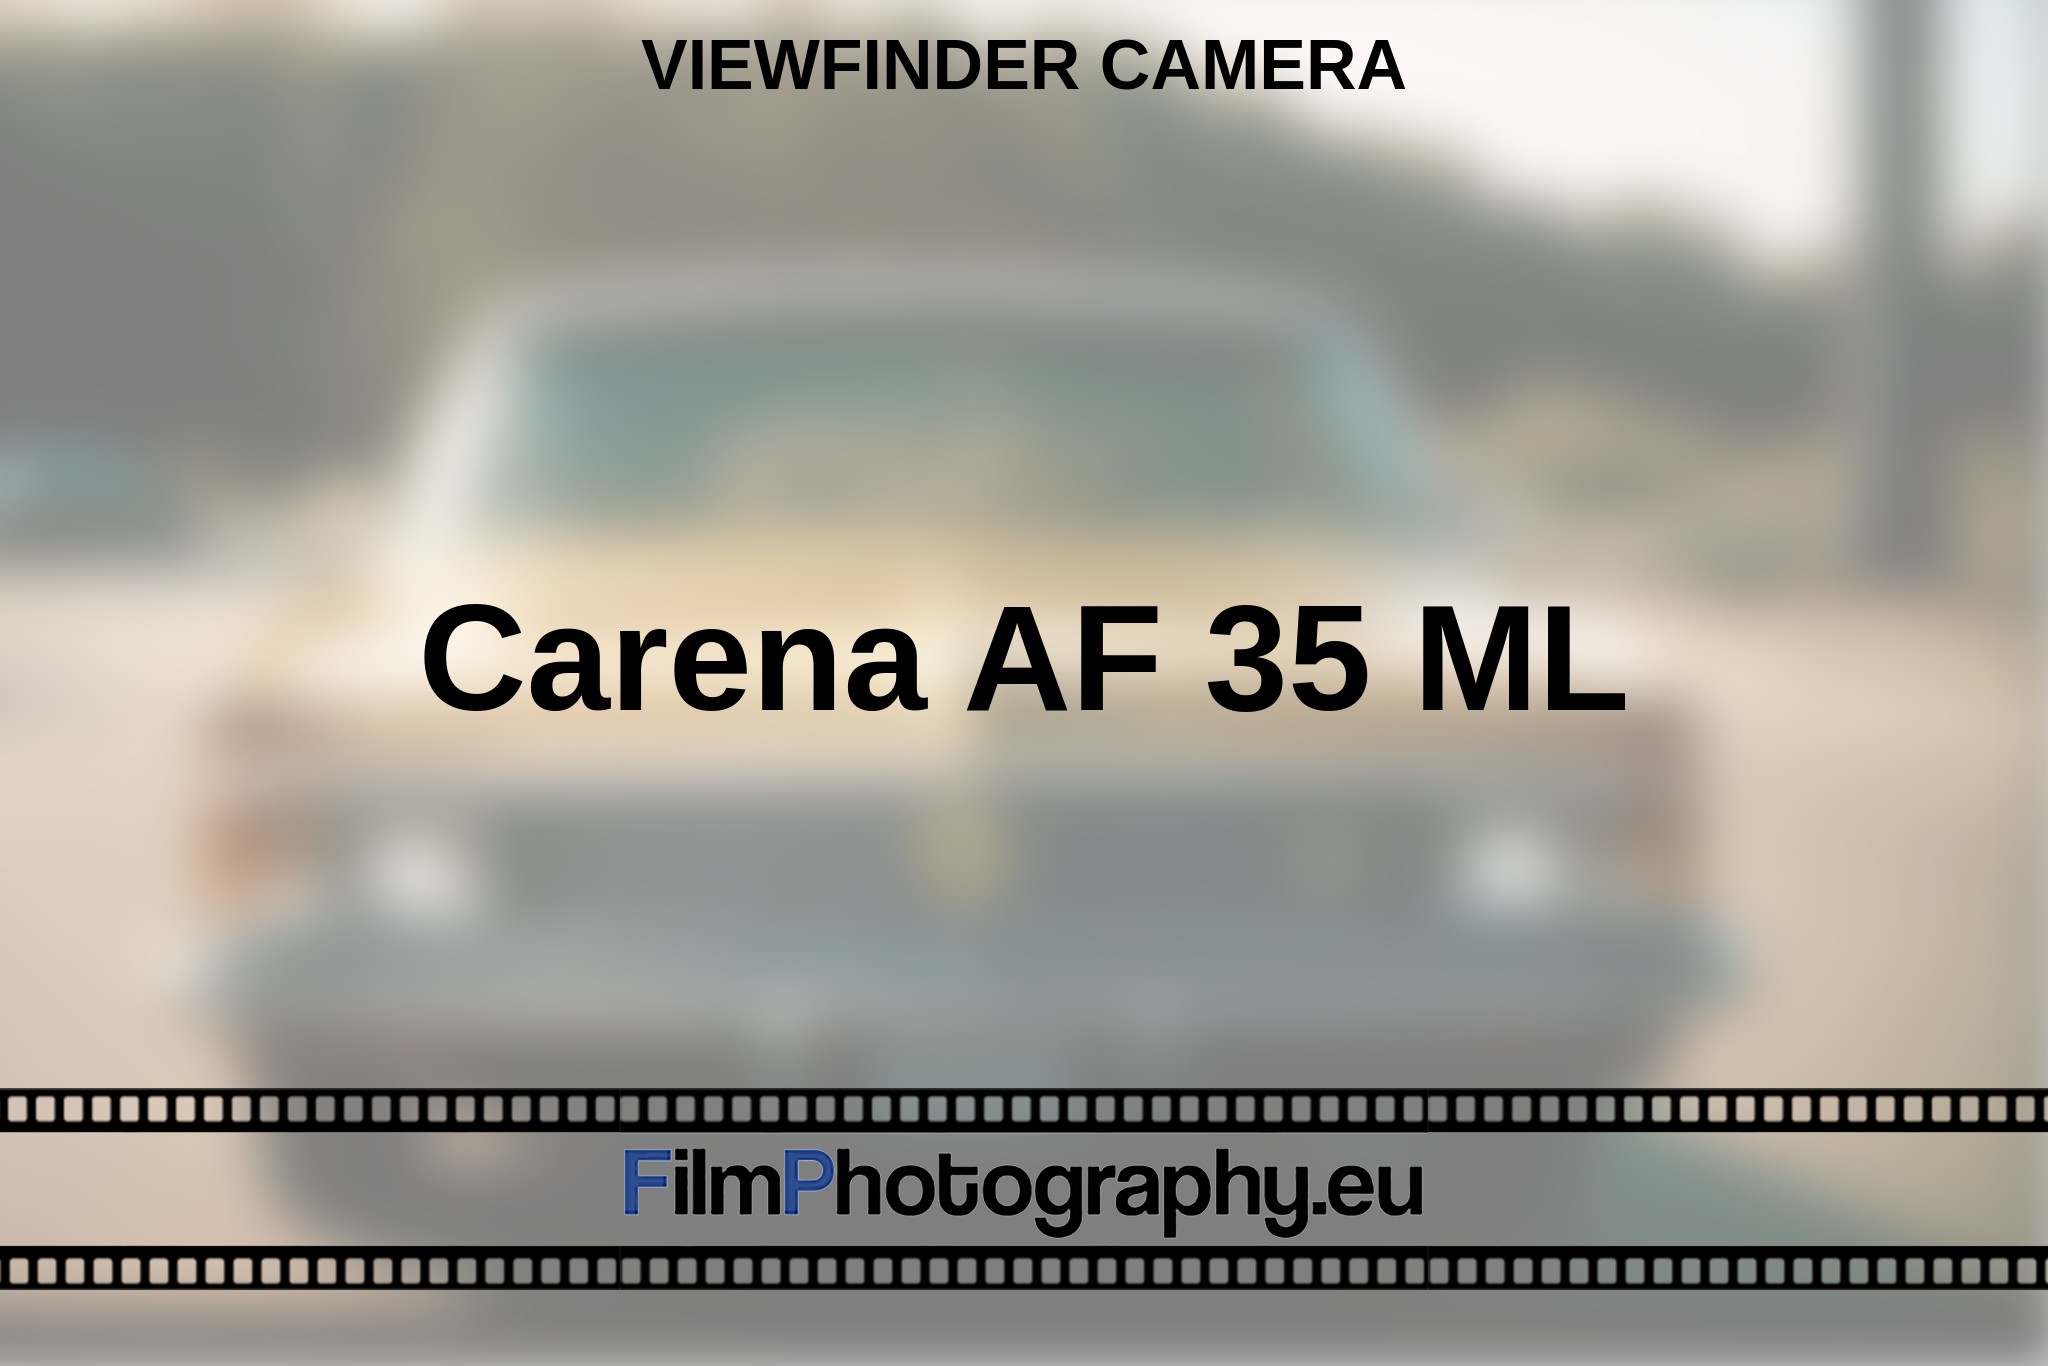 carena-af-35-ml-viewfinder-camera-en-bnv.jpg